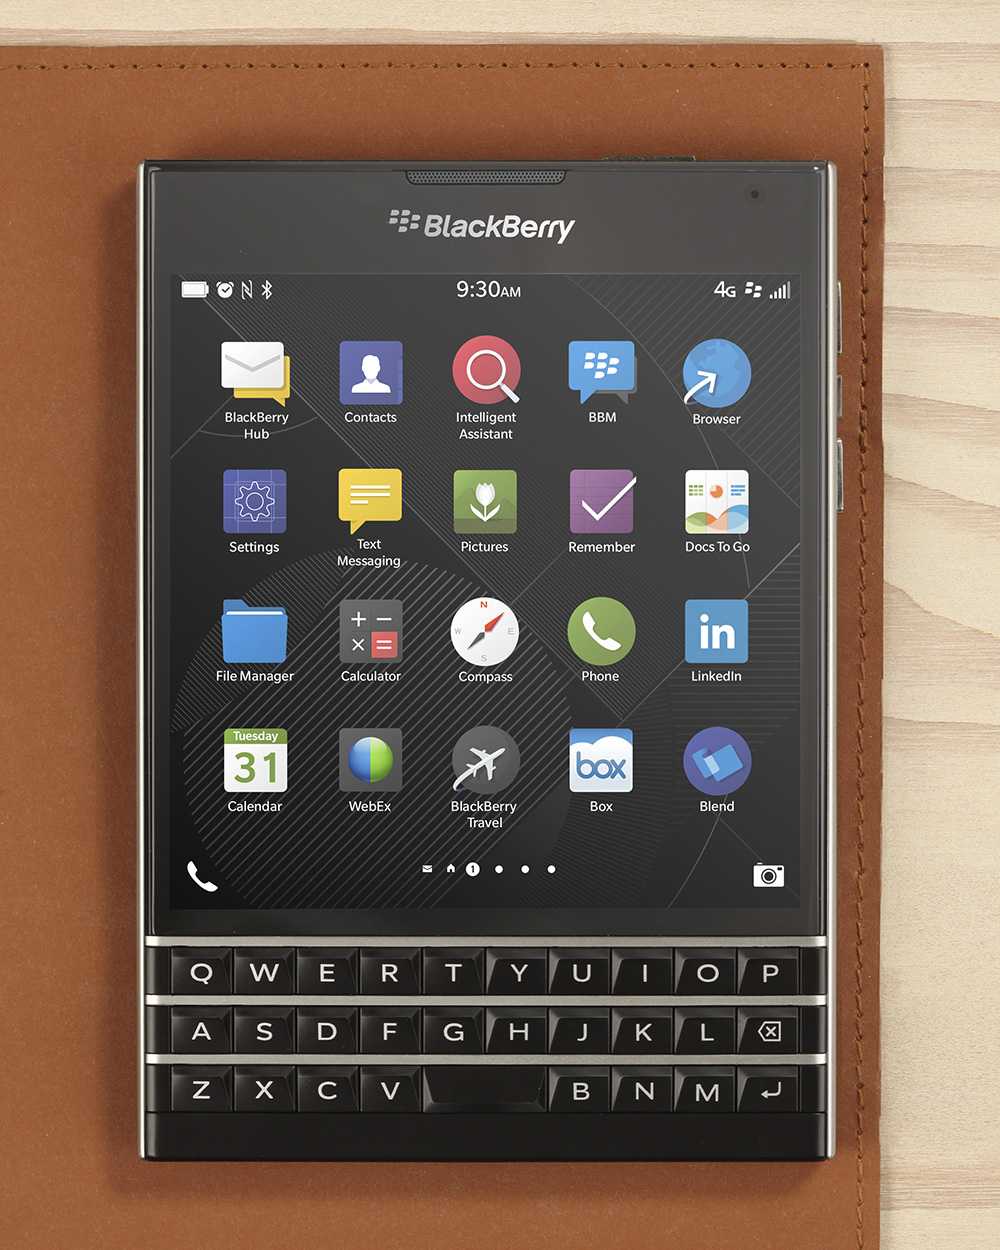 Blackberry 8700g